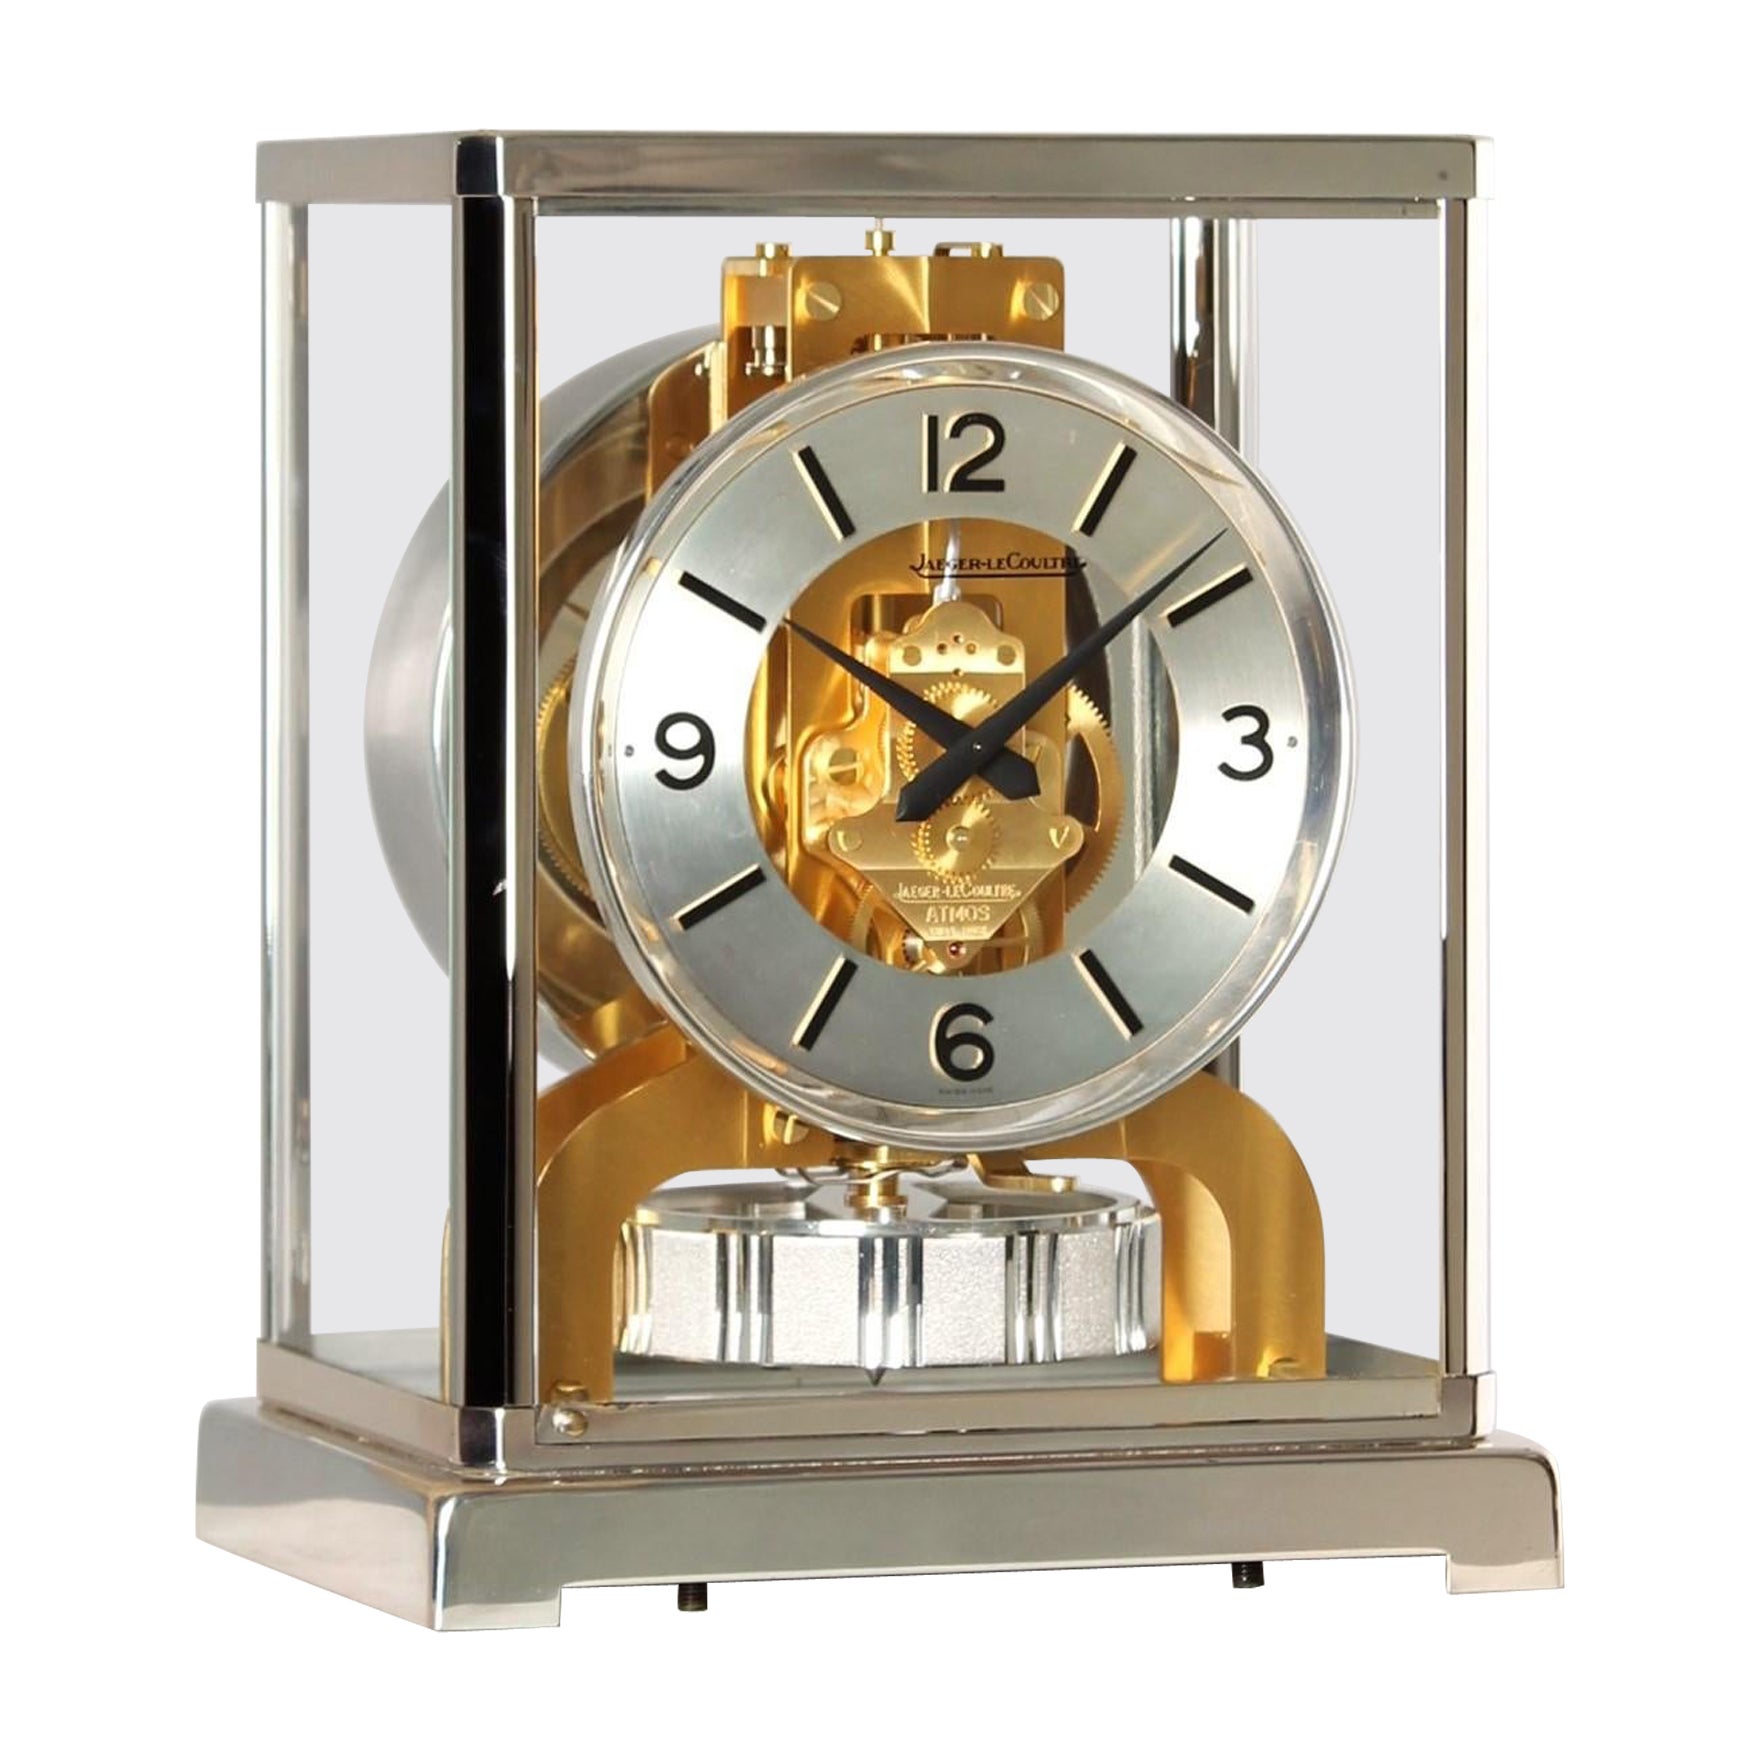 Jaeger LeCoultre, Bicolor Atmos-Uhr, Silber und Gold, hergestellt 1978